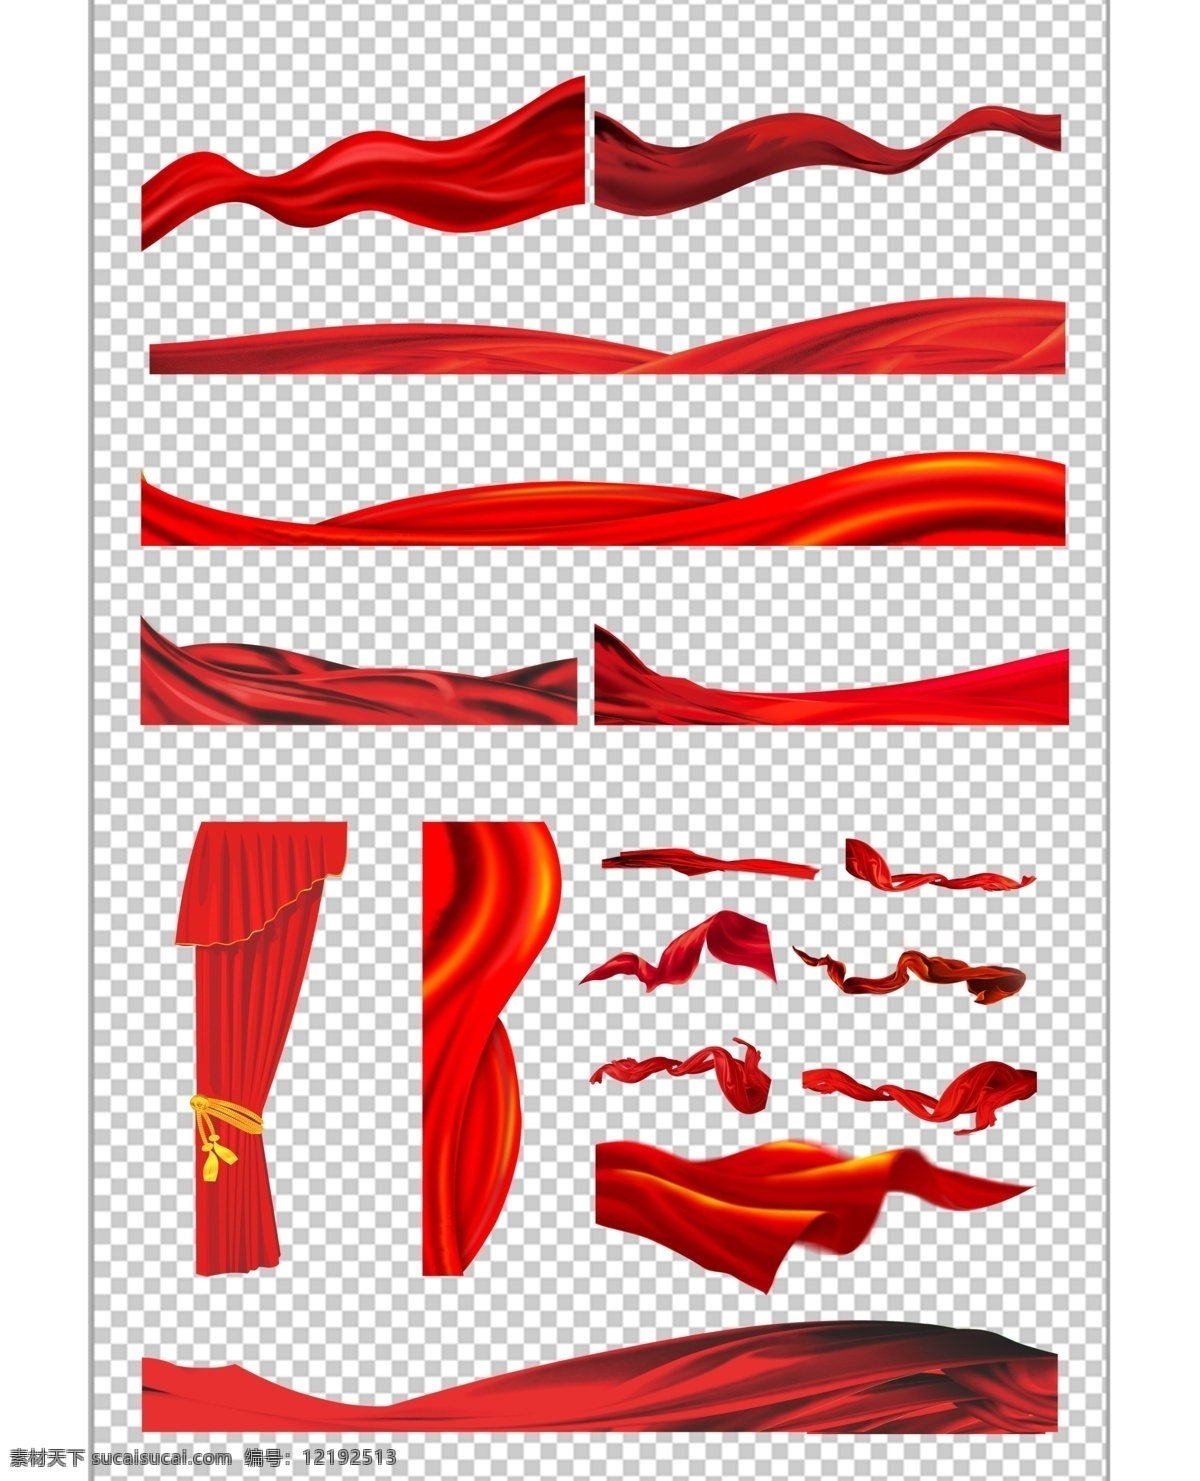 丝带素材 红色丝带 矢量丝带 包装带 包装带素材 礼品包装 底纹边框 其他素材